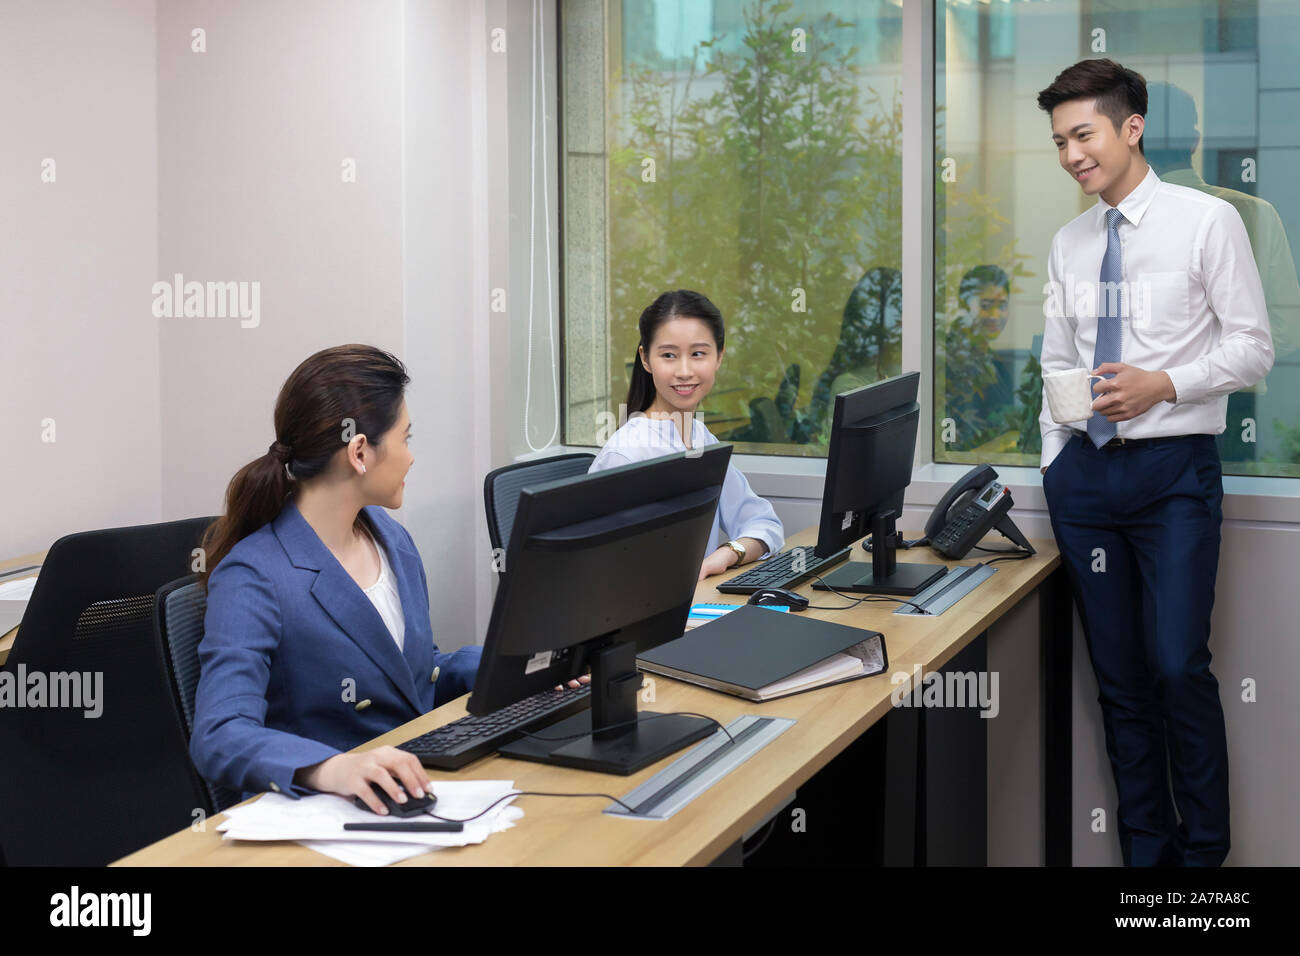 Fotografía de tres hombres y mujeres de negocios en una oficina con dos de ellos hablando mientras usan computadoras en sus escritorios y otra de pie Foto de stock